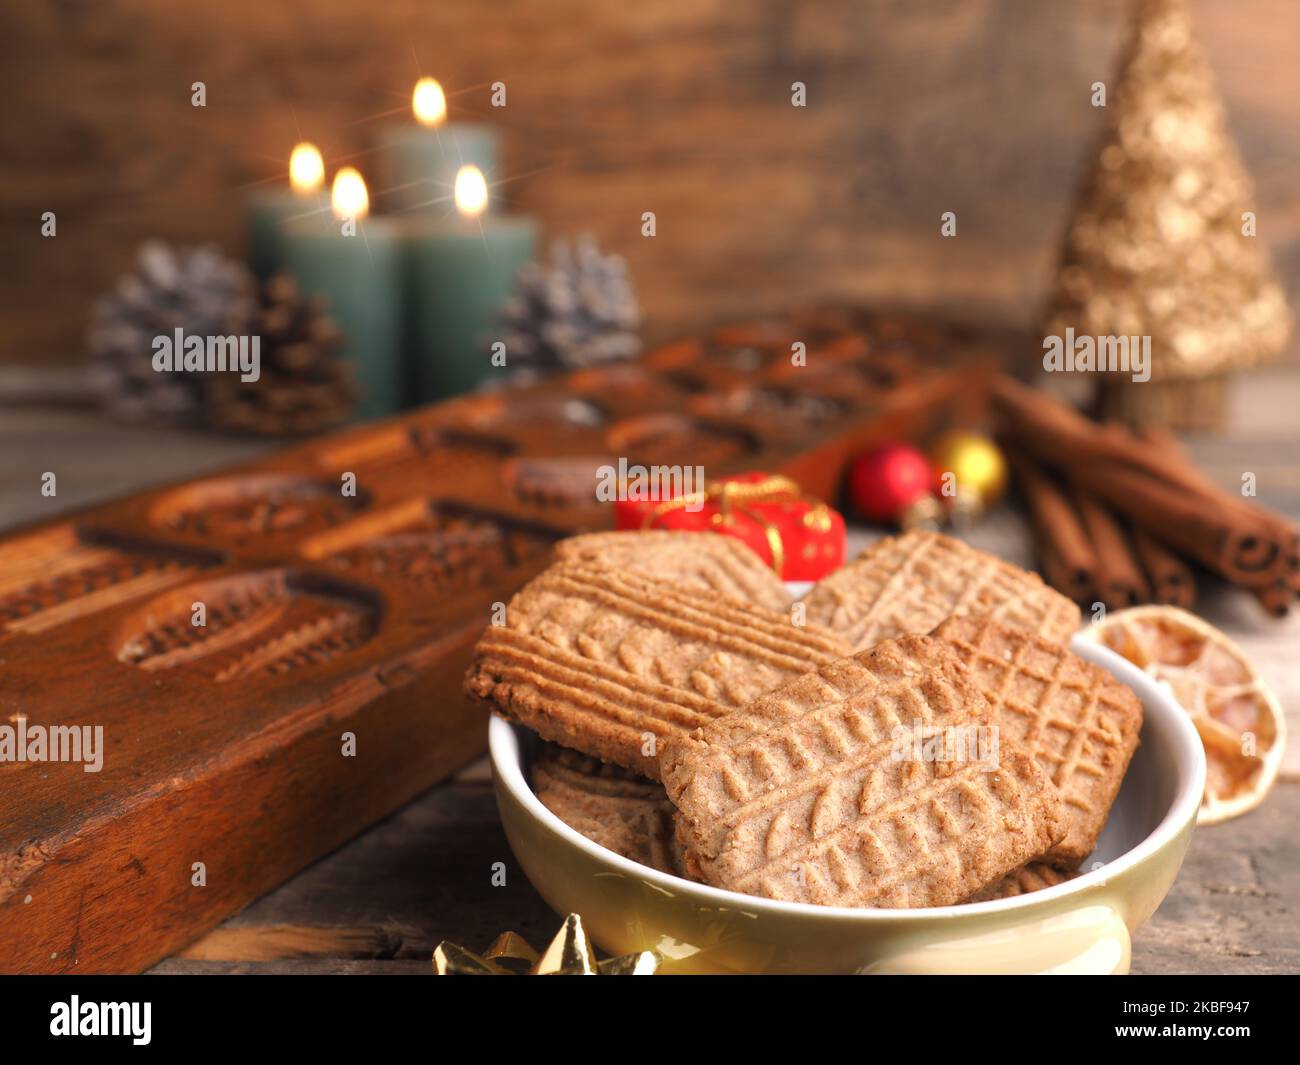 Heure de Noël, petits gâteaux Spekulatius faits maison, heure de l'Avent, cuisson de Noël, cuisine de saison Banque D'Images